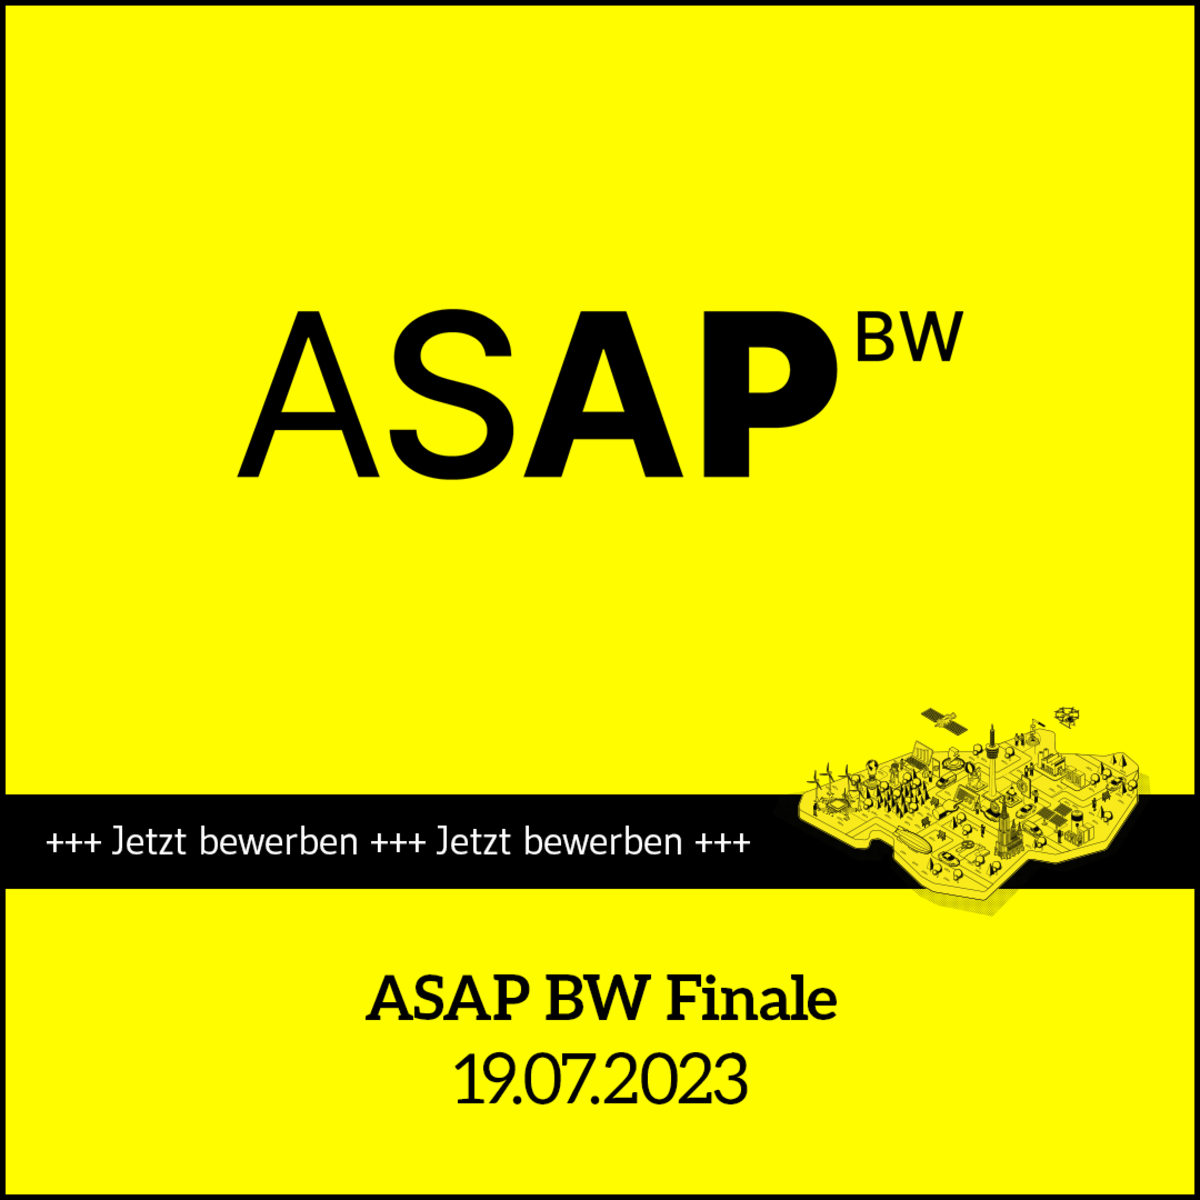 Termin-Kachel für den Vorentscheid ASAP BW Finale am 19.07.2023. Text: Jetzt bewerben.